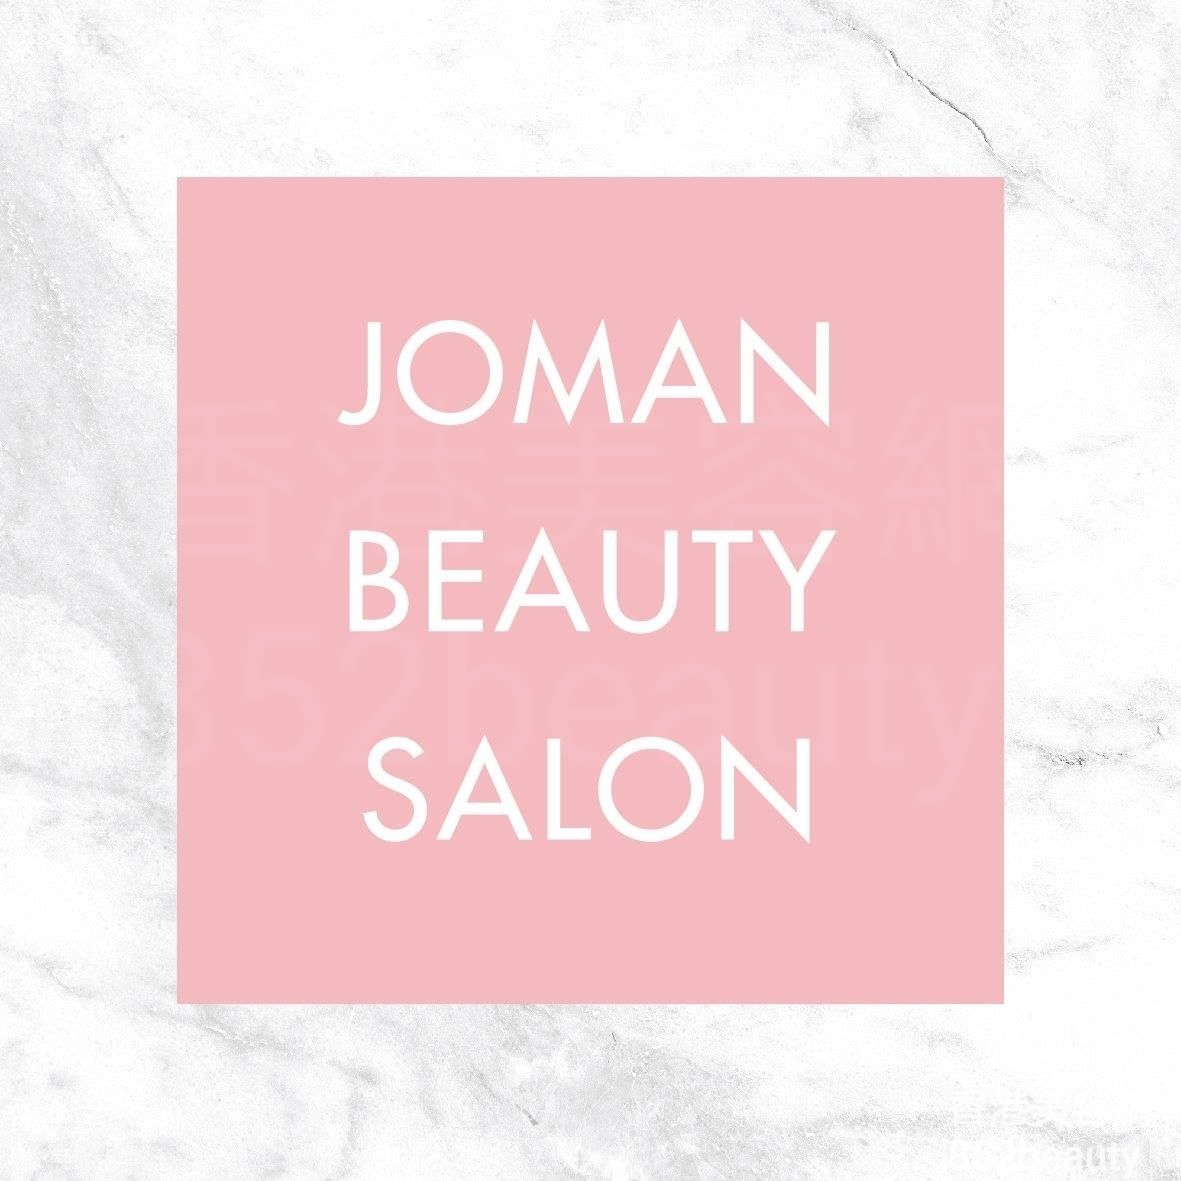 修眉/眼睫毛: Joman Beauty Salon